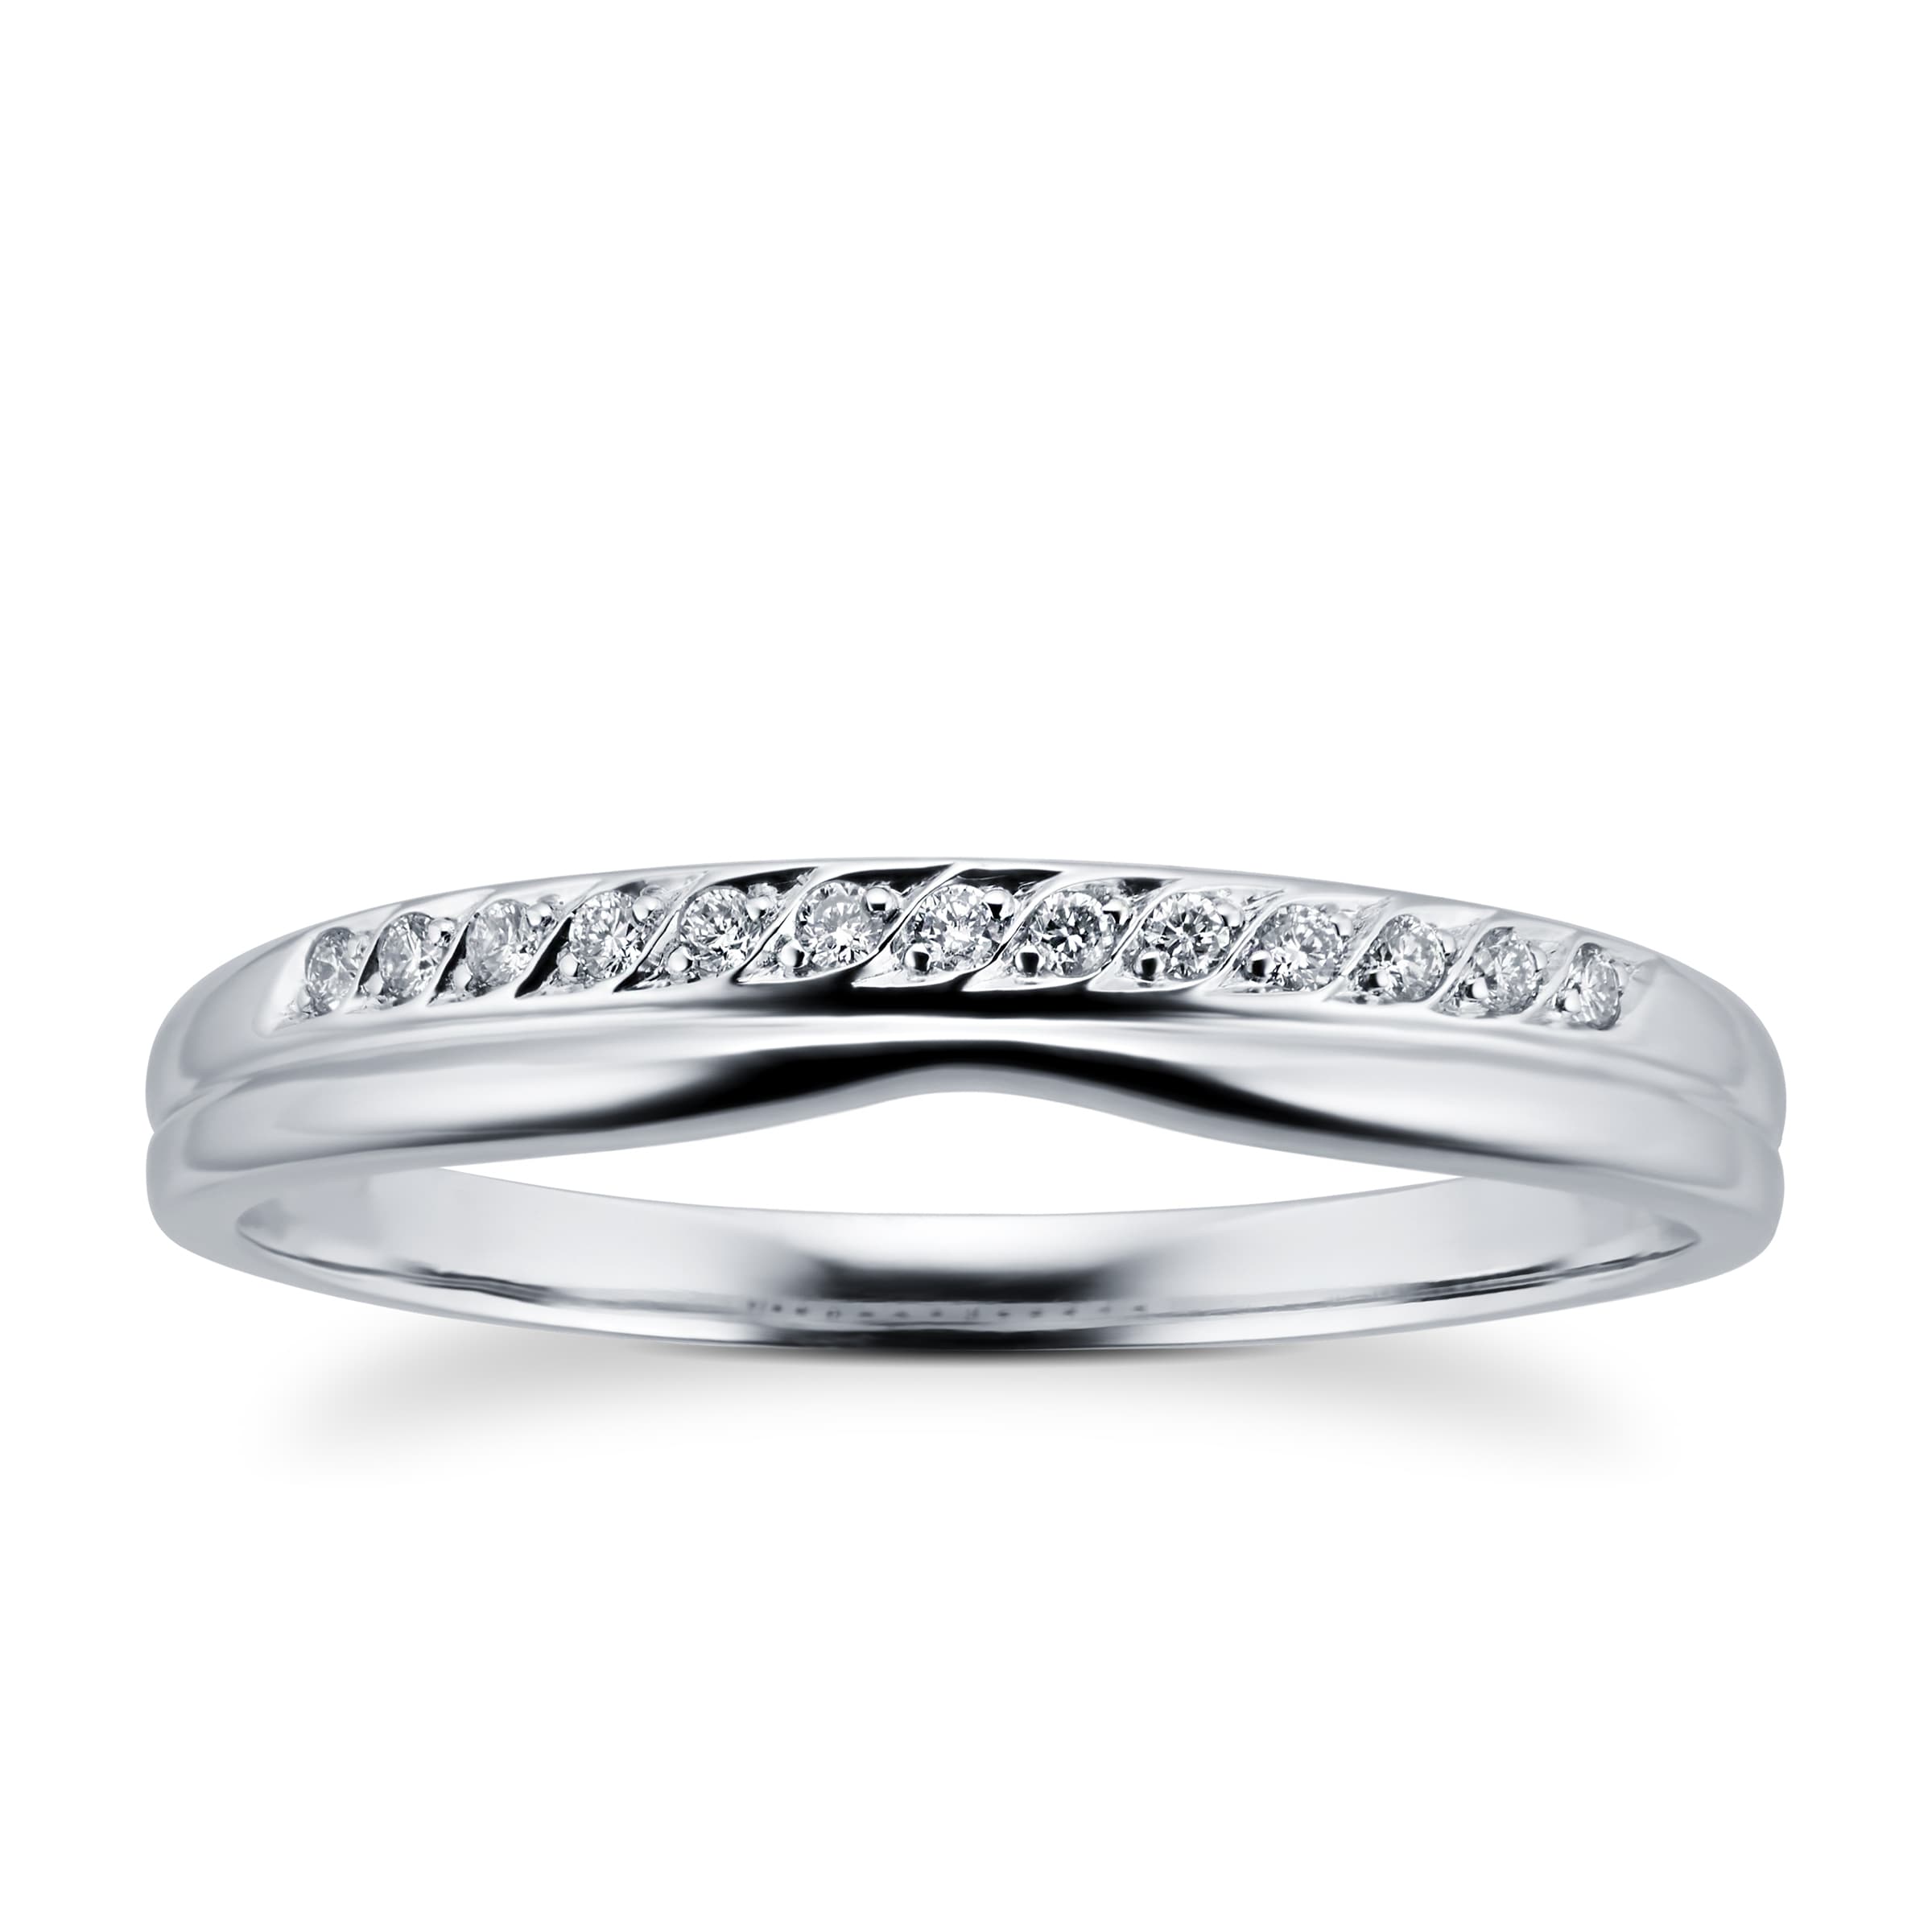 Ladies Diamond Set Shaped Wedding Ring In 18 Carat White Gold - Ring Size K